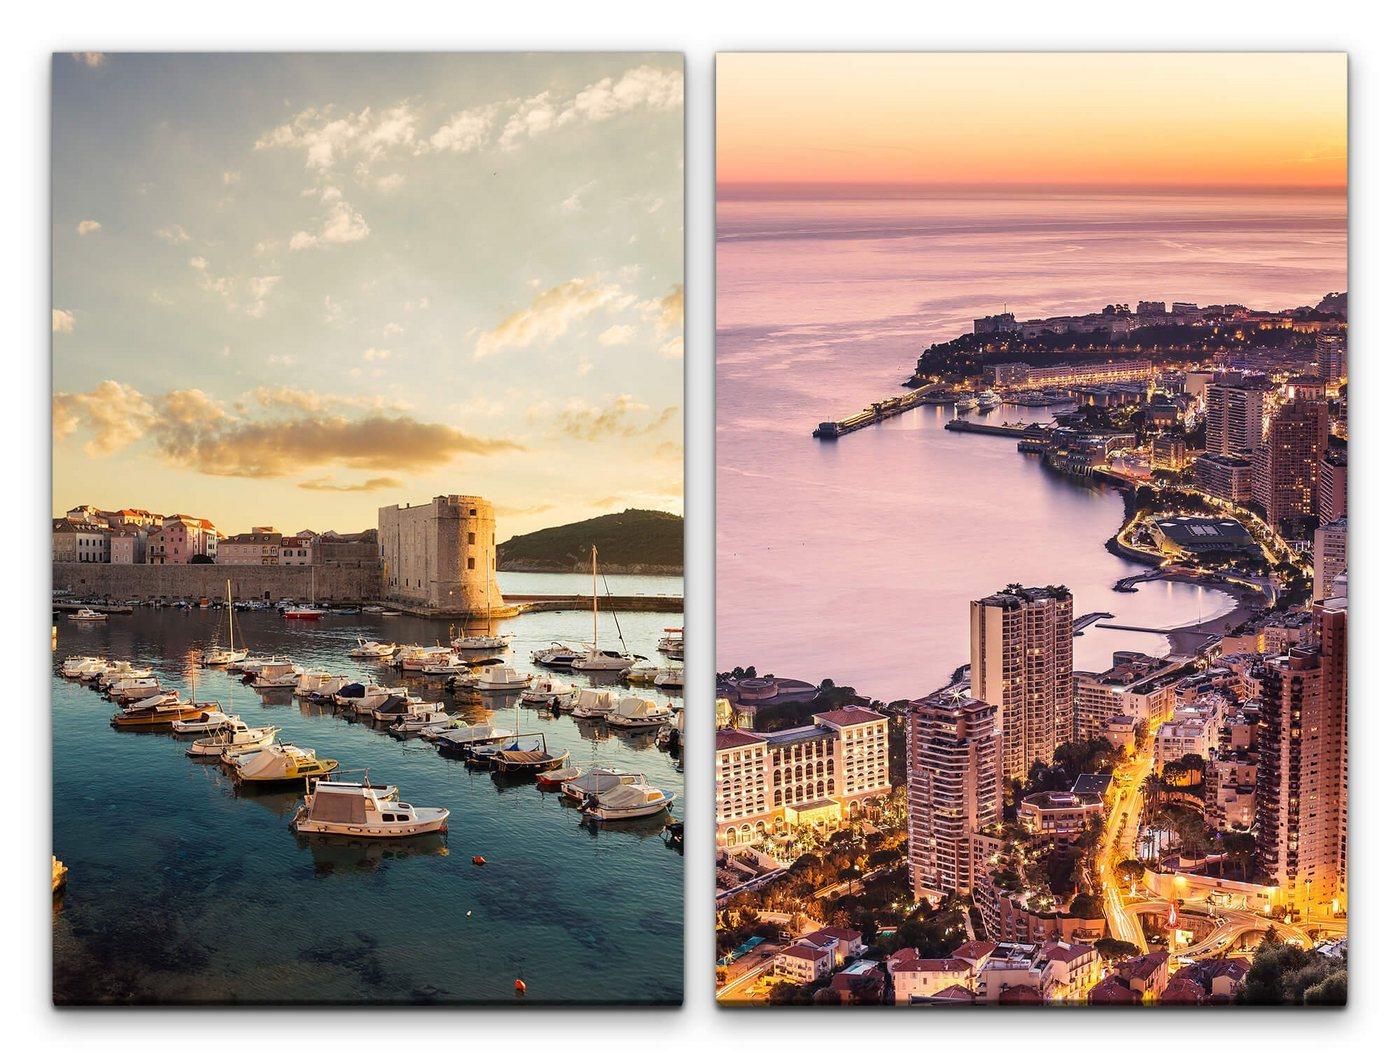 Sinus Art Leinwandbild 2 Bilder je 60x90cm Monte Carlo Monaco Luxus Meer Boote Abenddämmerung Urlaub